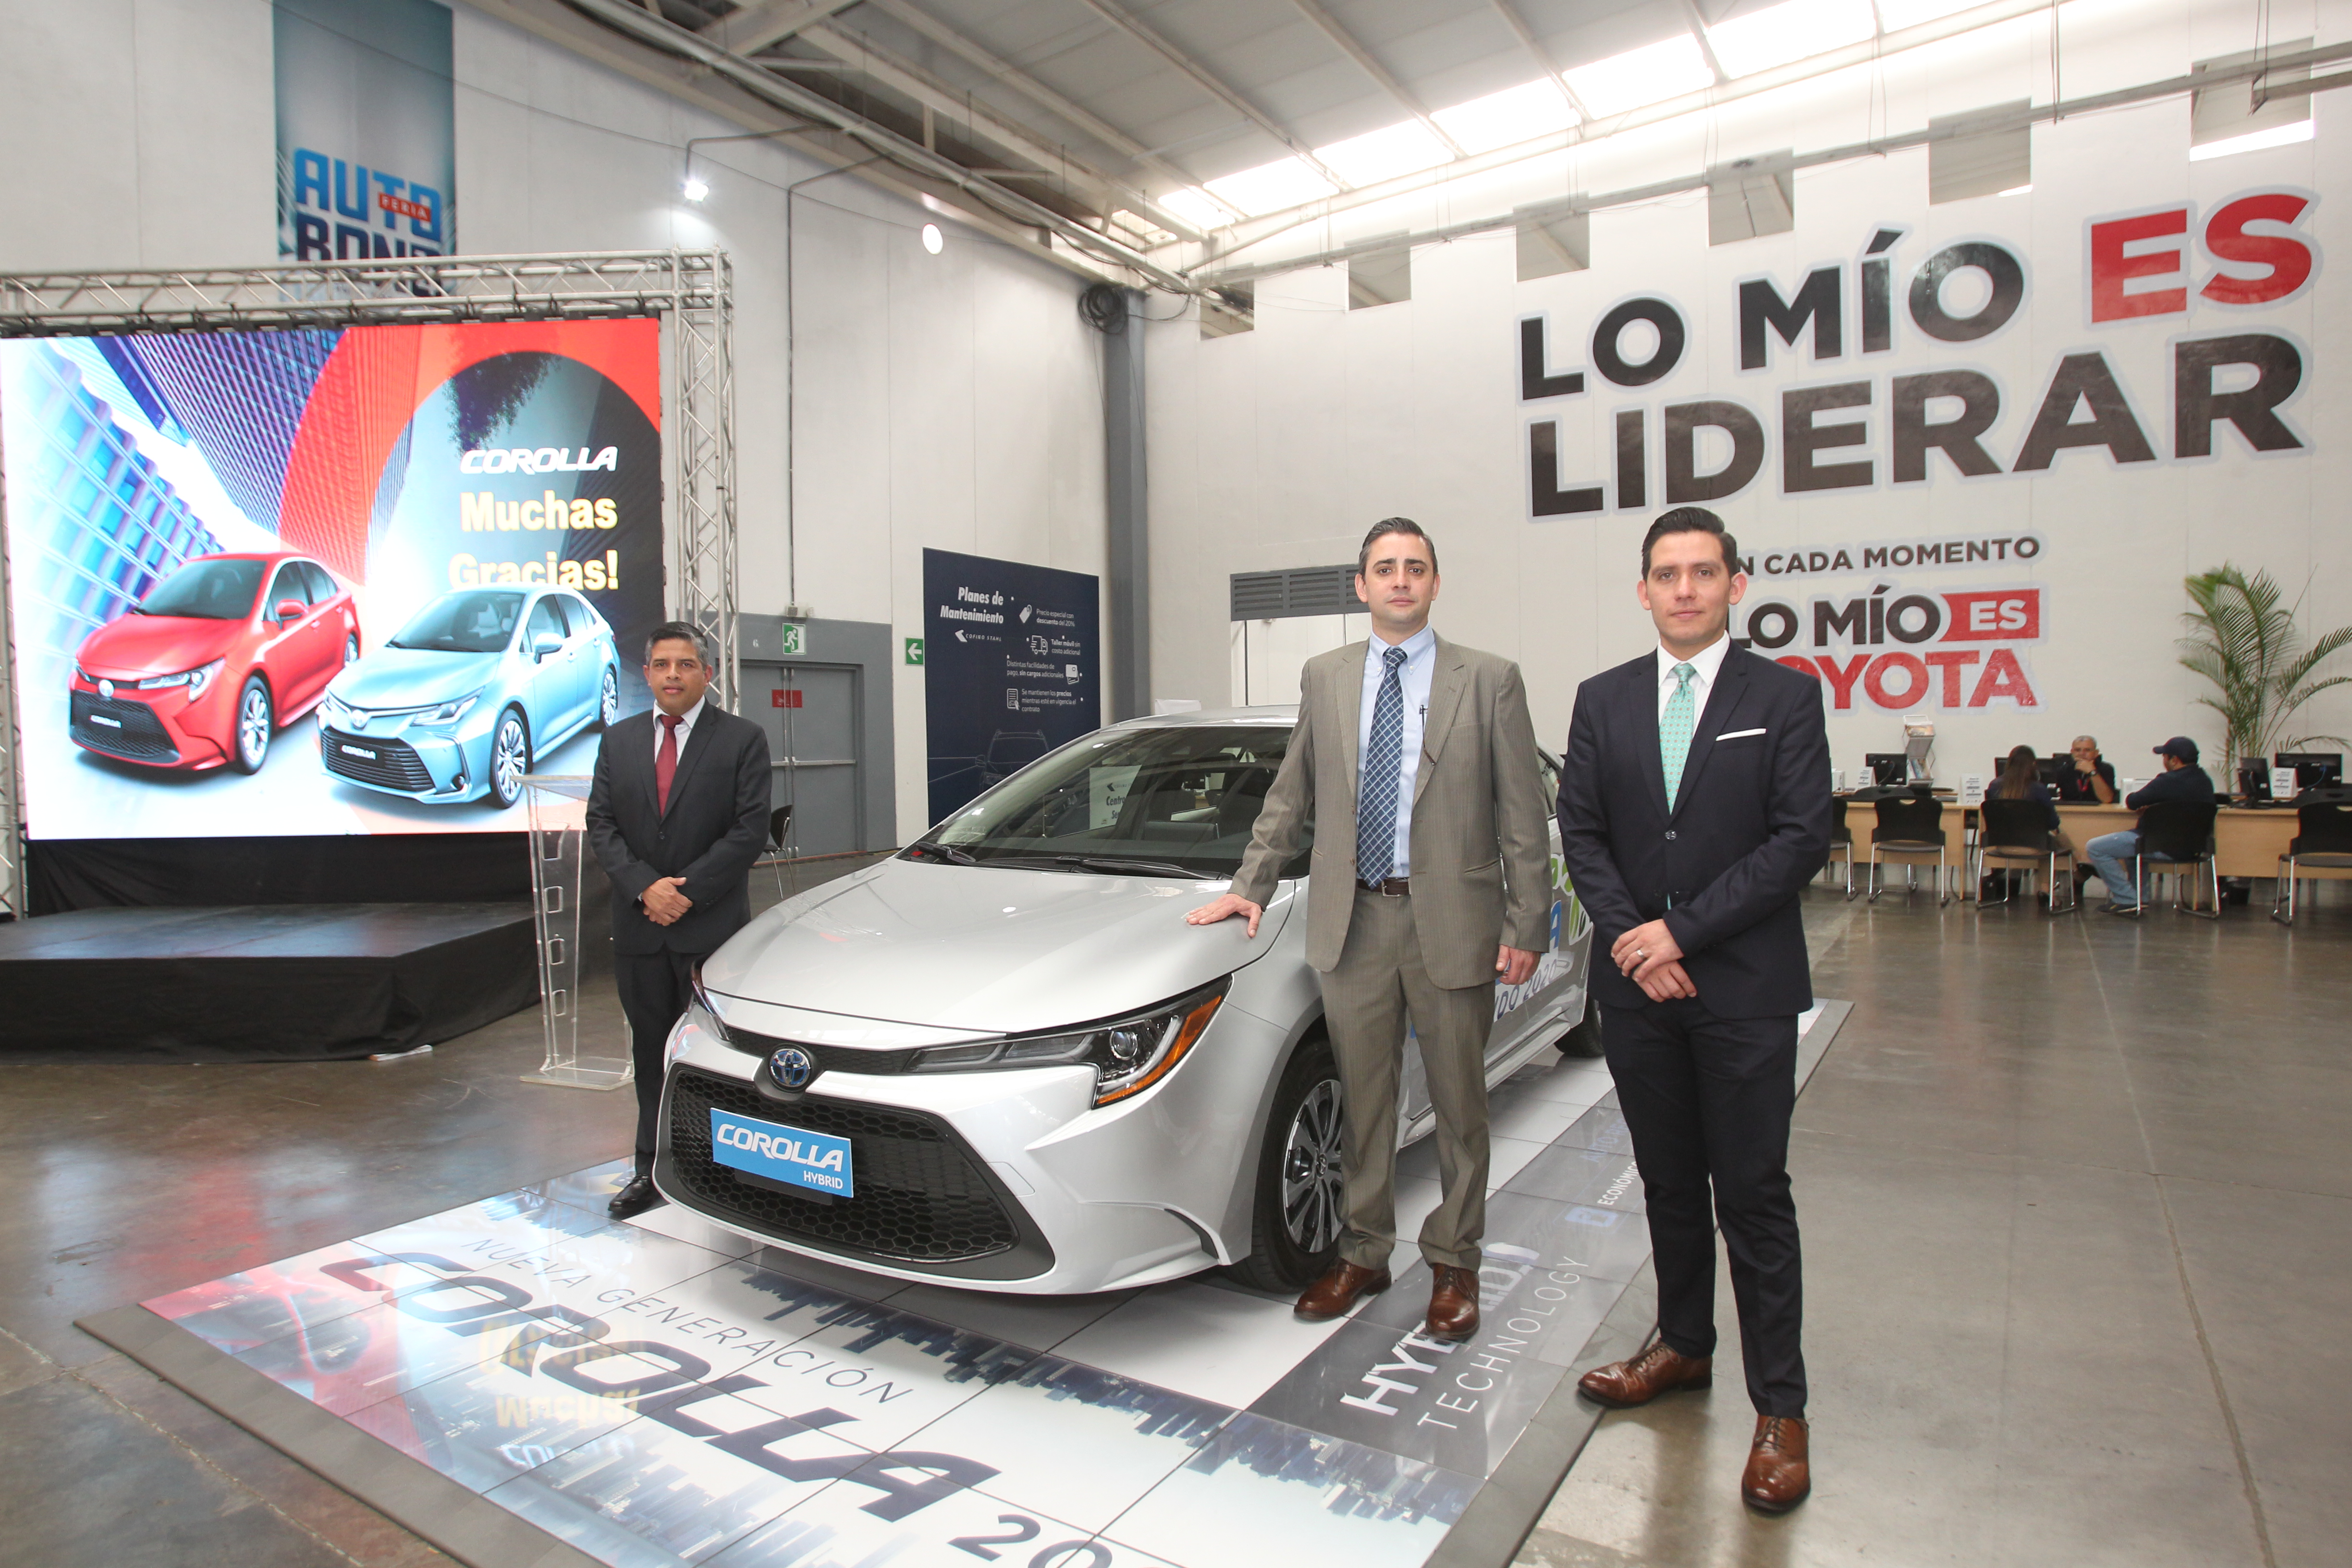 Personeros de Cofiño Stahl presentaron el nuevo Toyota Corolla. Foto Norvin Mendoza